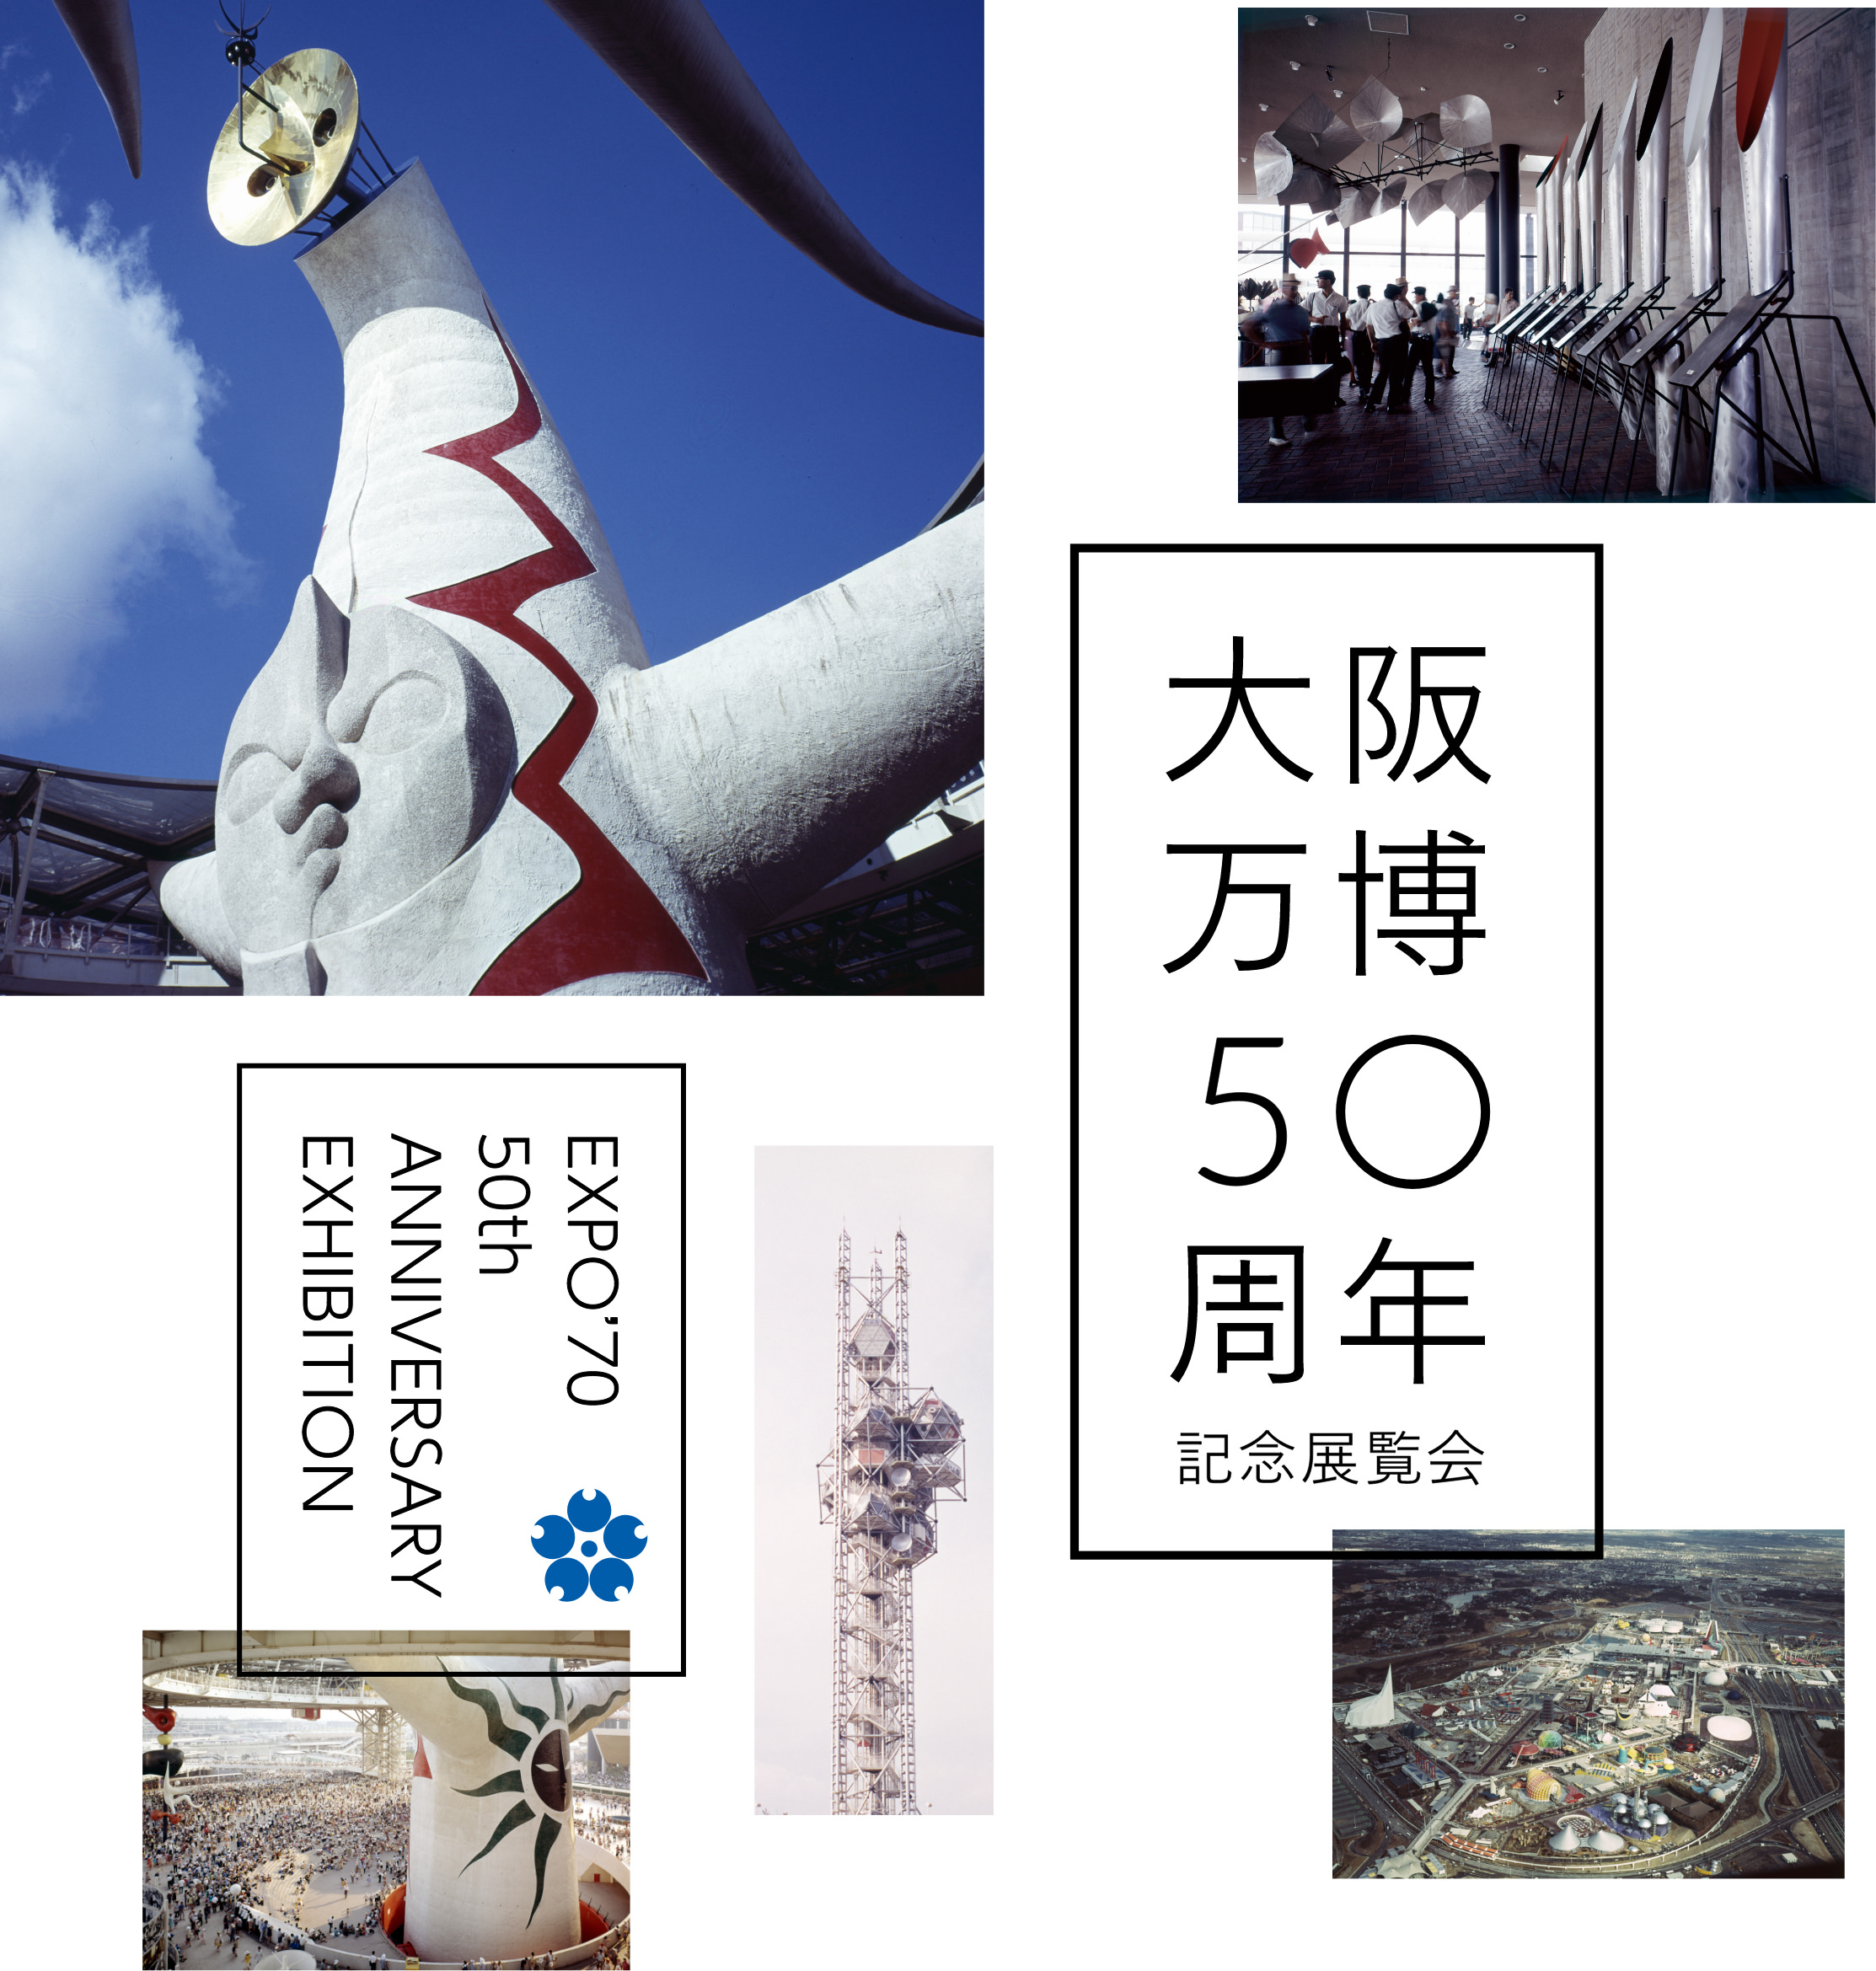 され の 万博 は 展示 で 大阪 た 1970年の大阪万博を振り返る「人類の進歩と調和」に寄せられた数々の展示も紹介